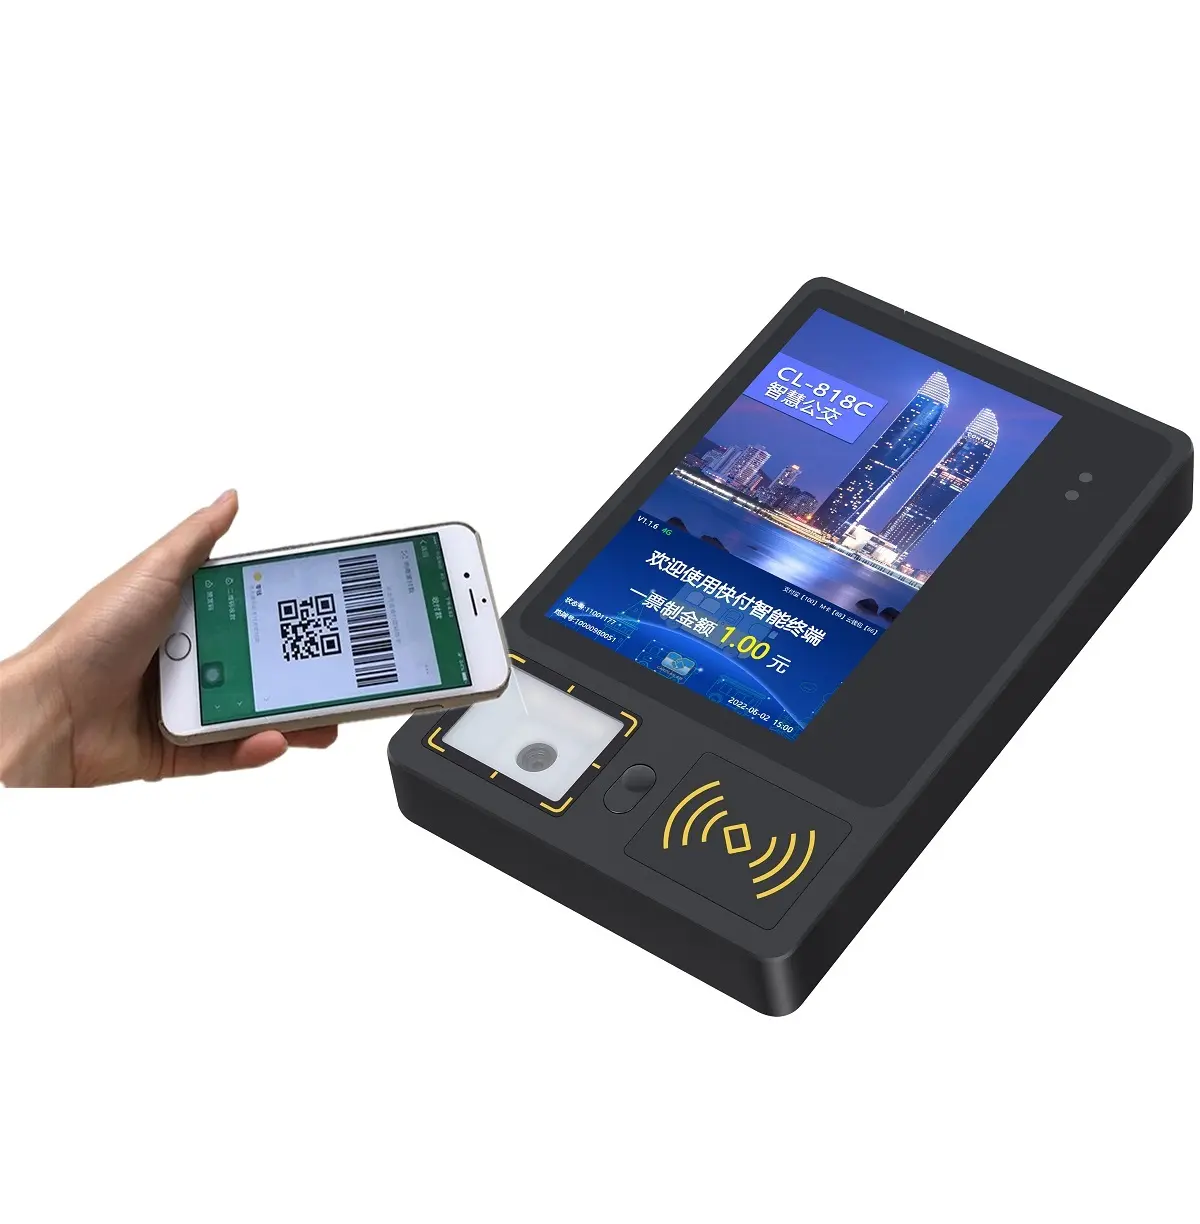 Terminal NFC de bus/Validateur de carte prépayée fixe/Fabricant de point de vente de bus